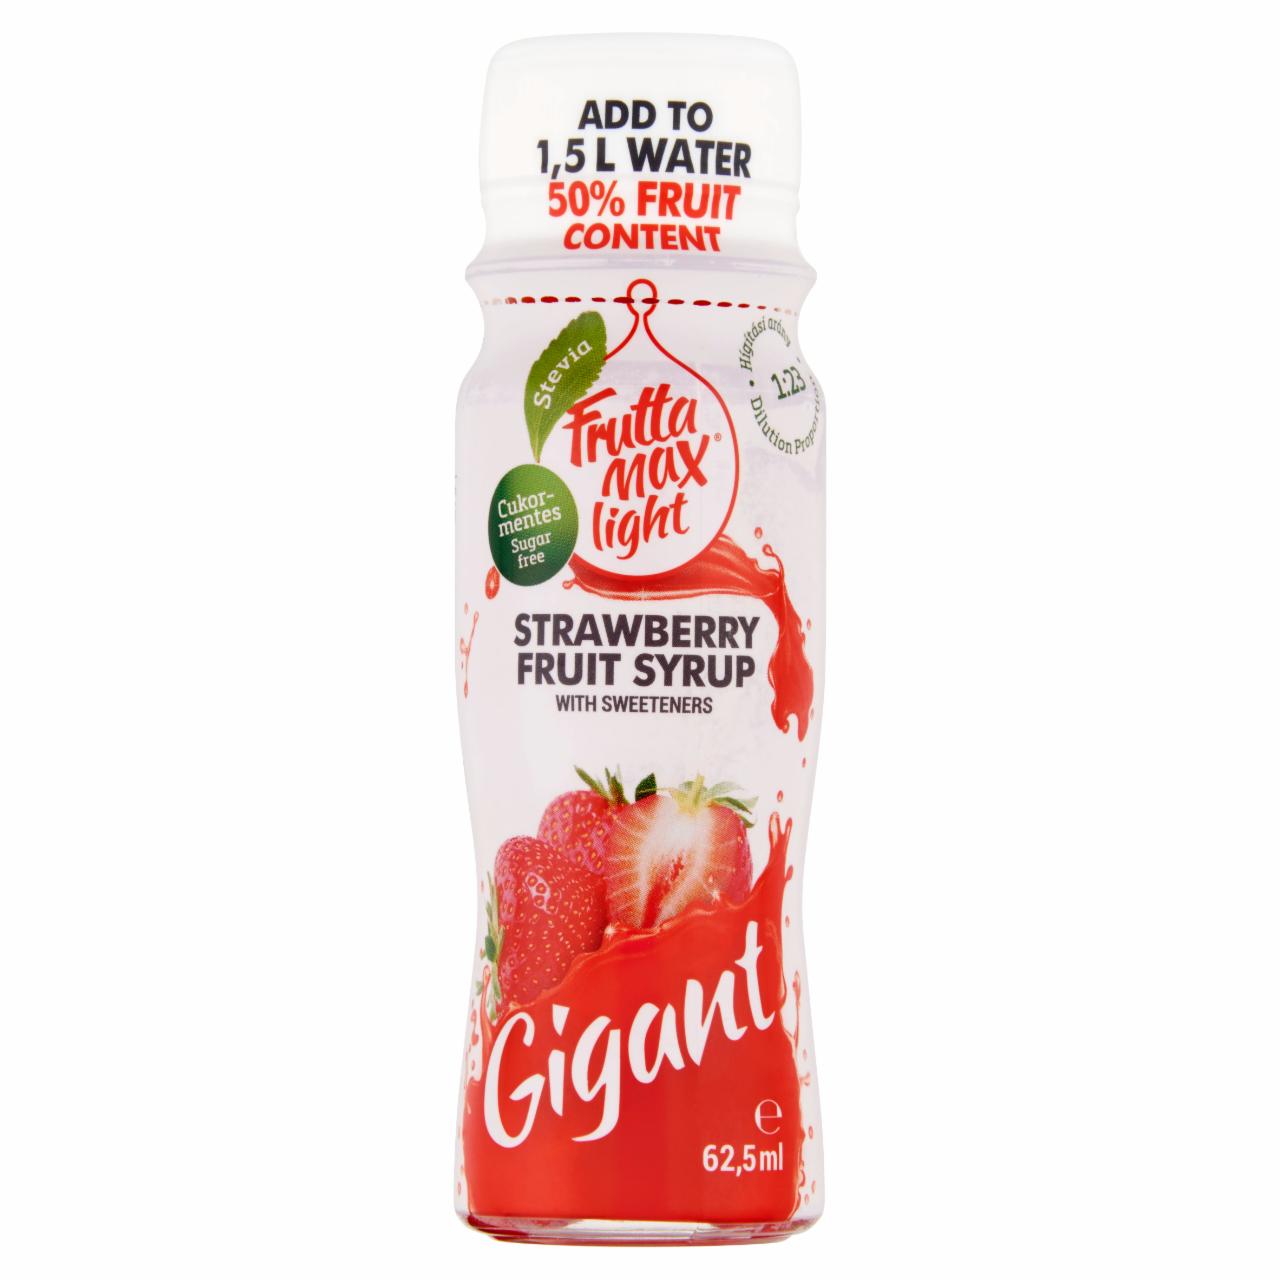 Képek - FruttaMax Gigant cukormentes eper gyümölcsszörp édesítőszerekkel 62,5 ml